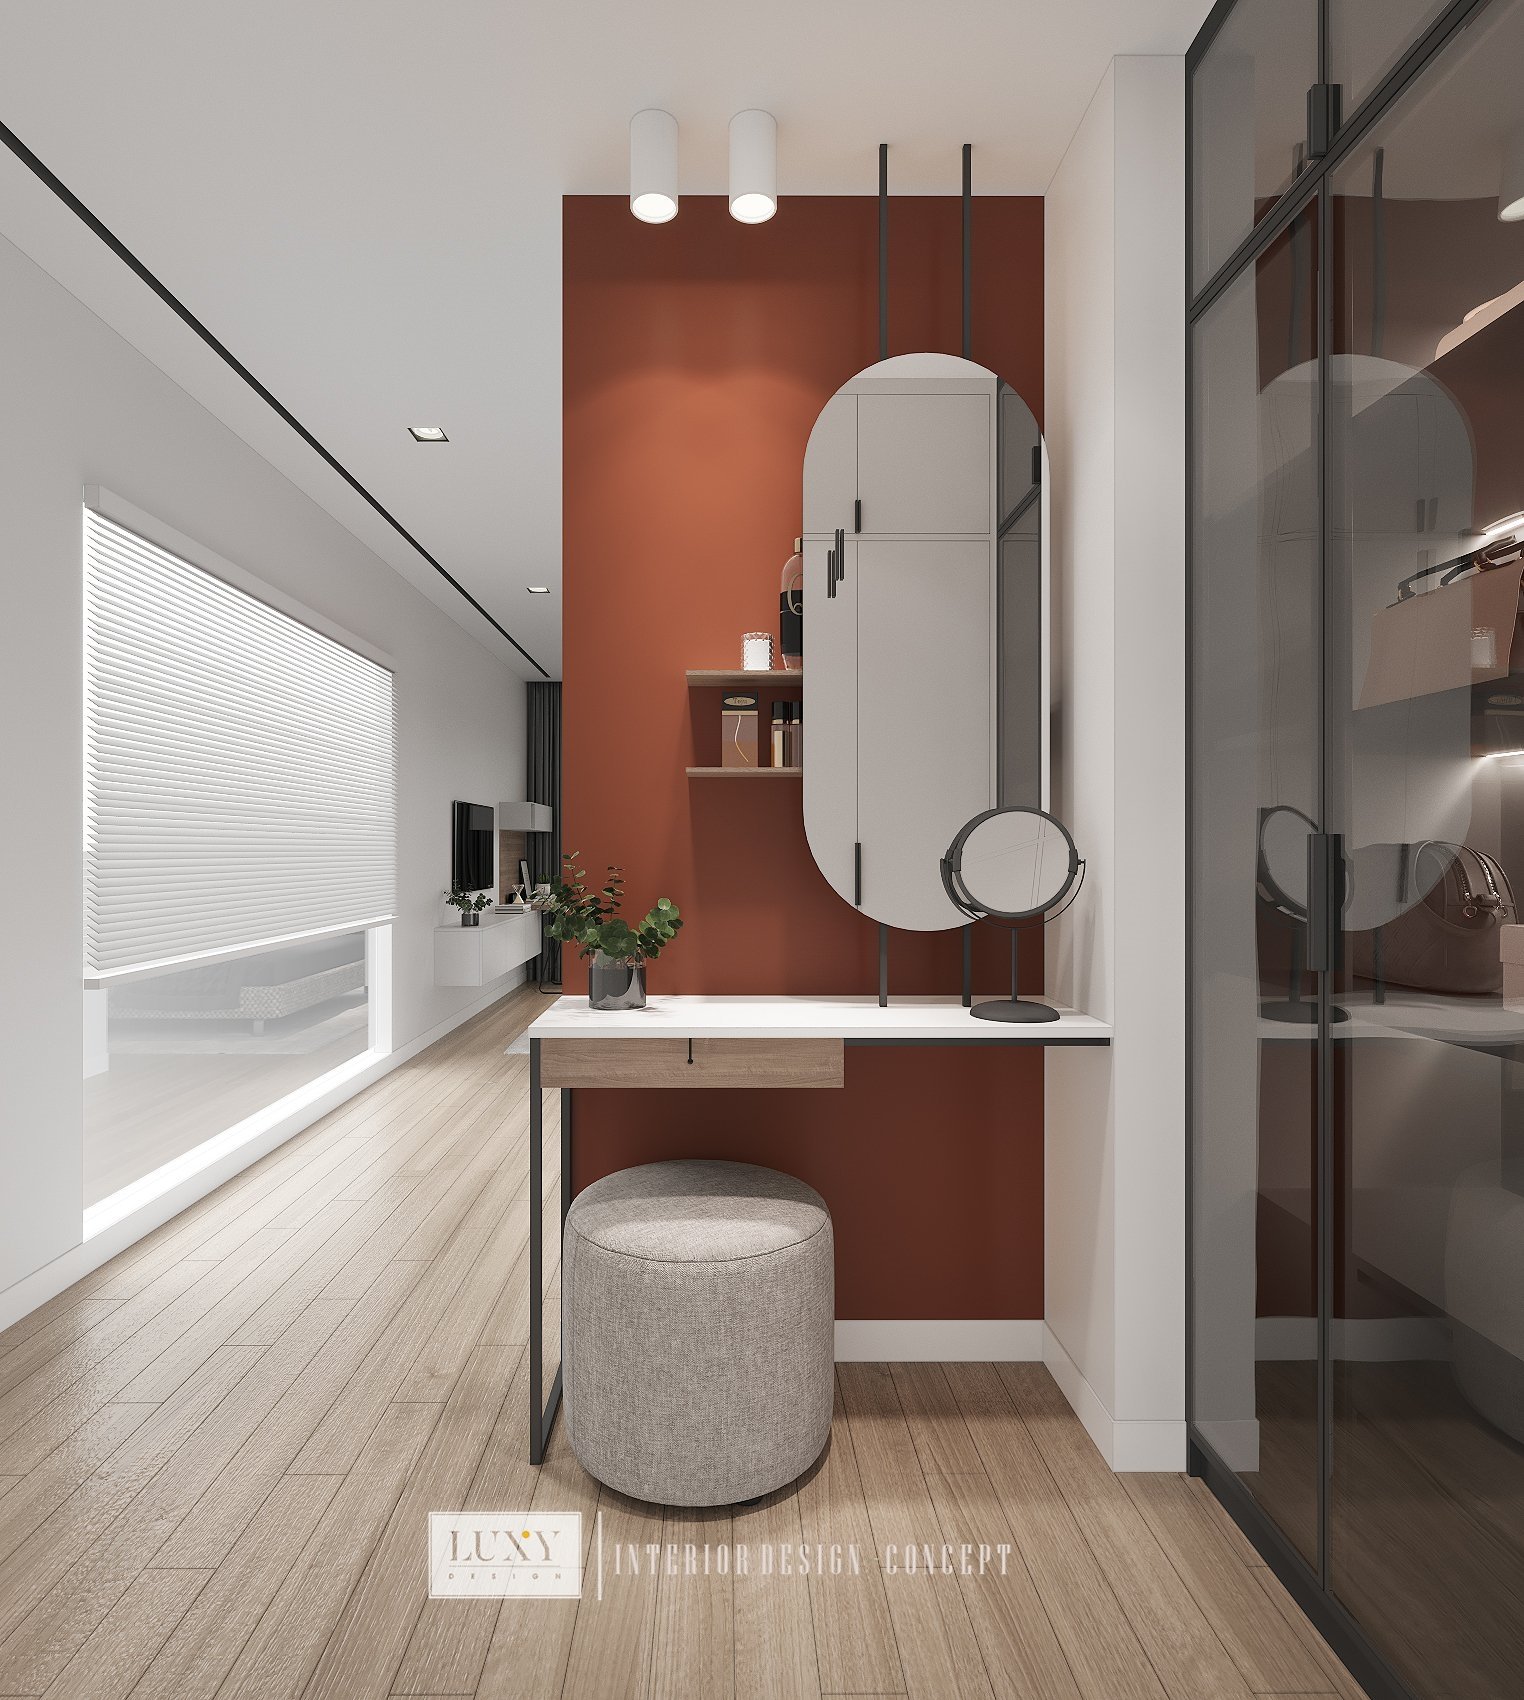 Thiết kế Duplex hiện đại – Phòng ngủ